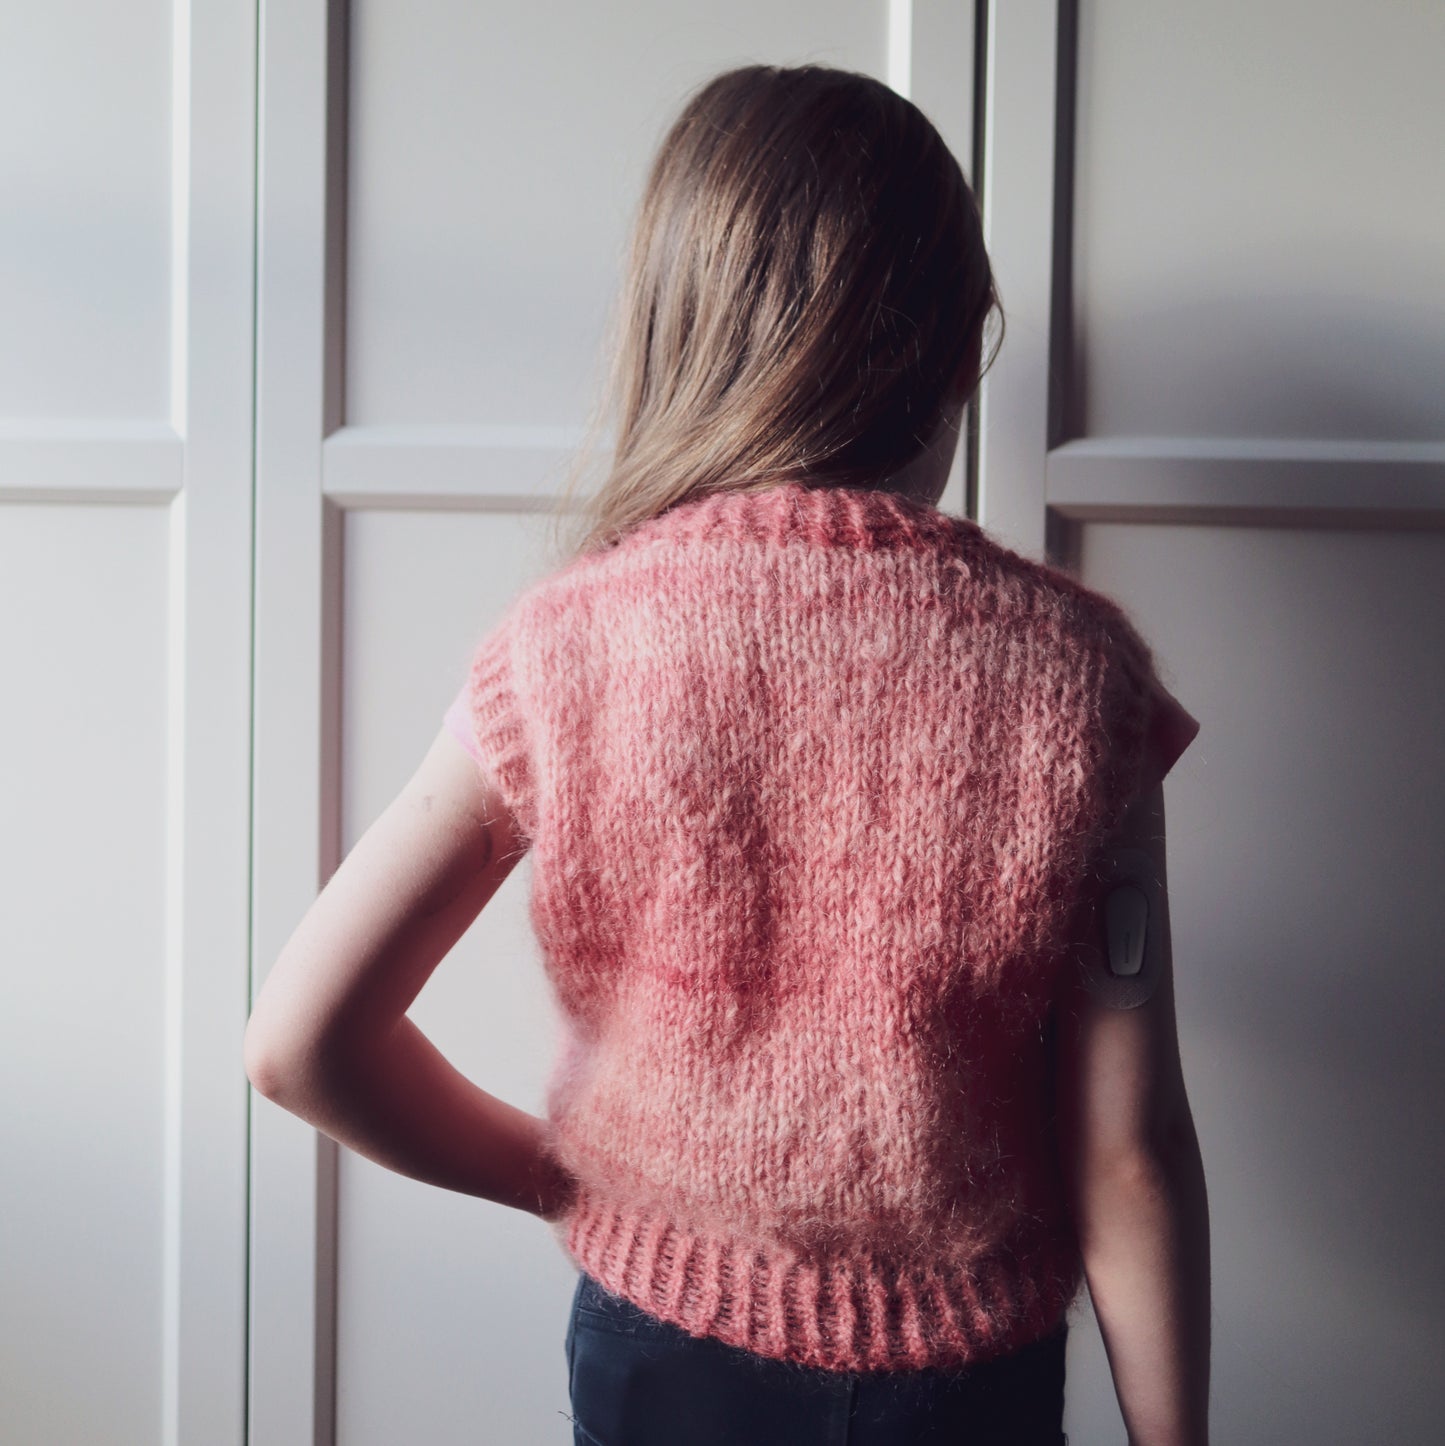 Kirvi vest knitting pattern for kids